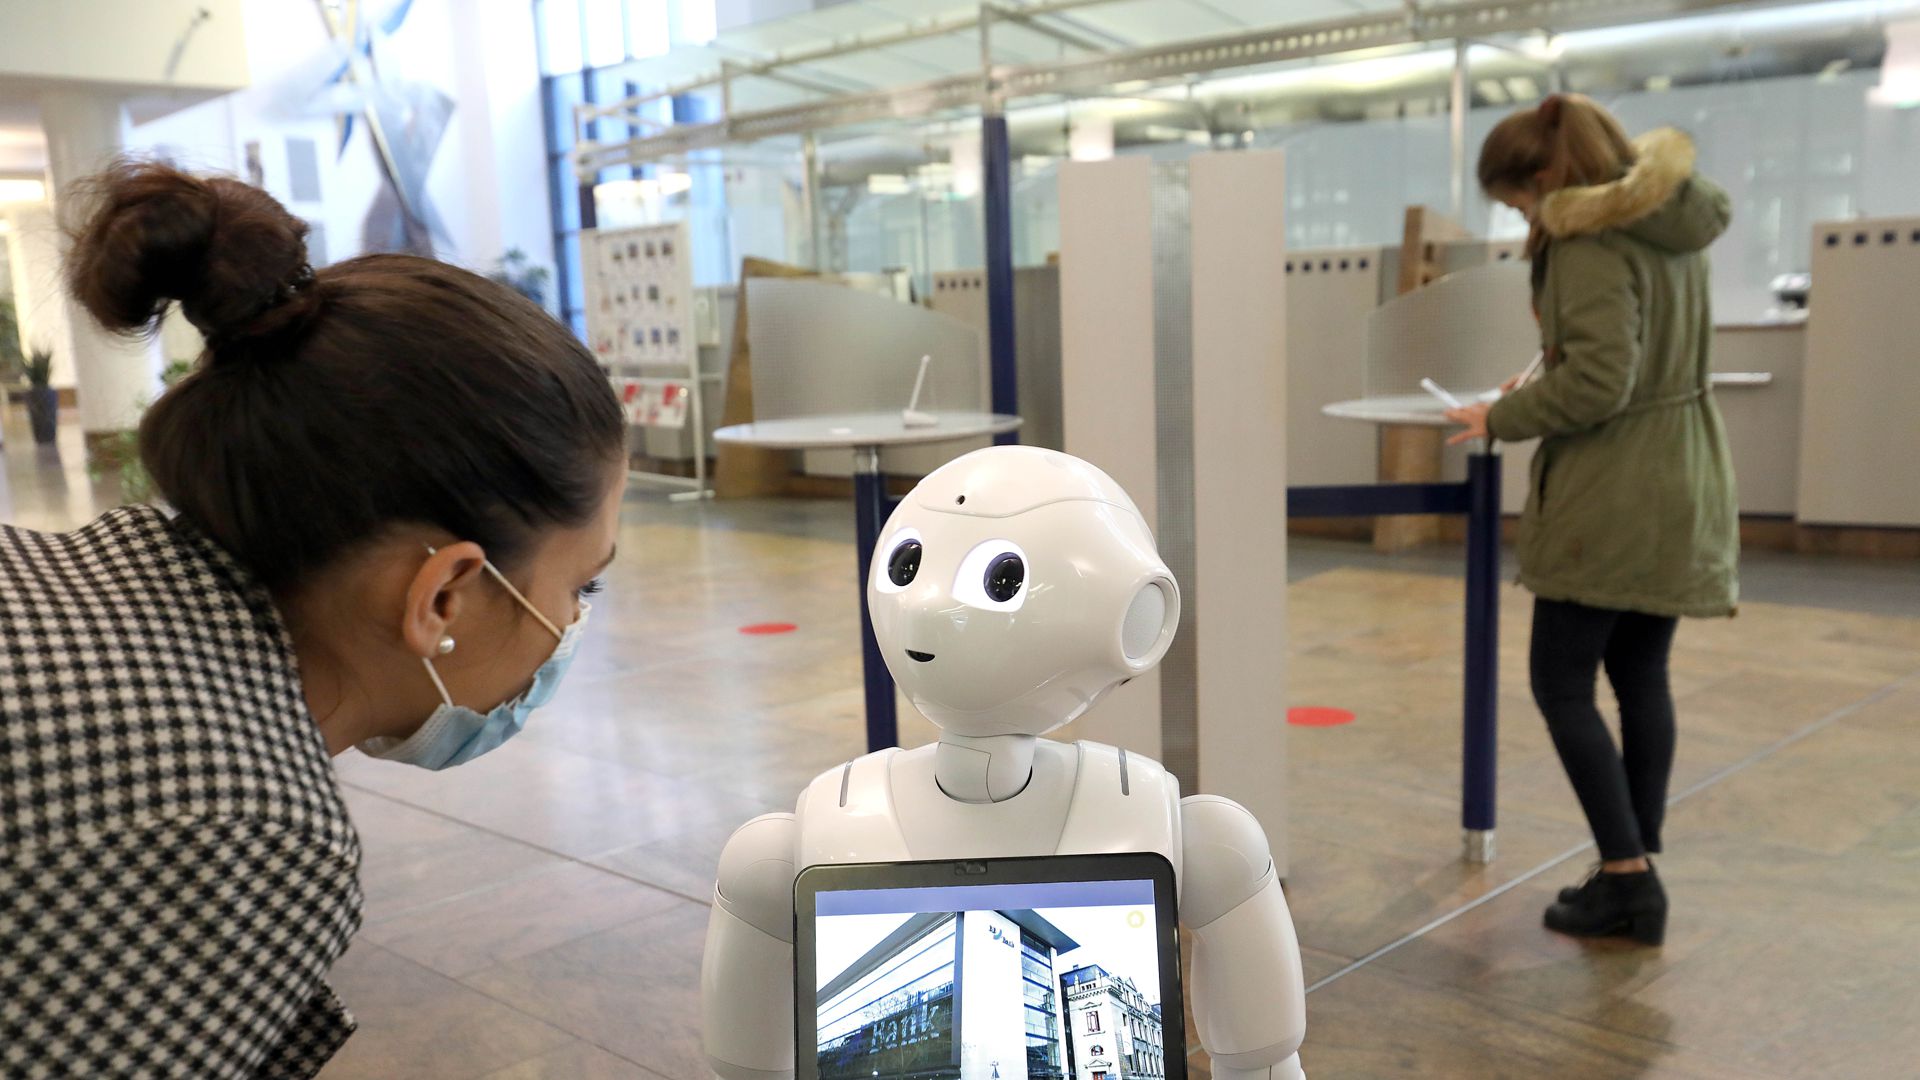 Der Roboter als Bankangestellter: In einer Filiale der BBBank in Karlsruhe empfängt „Gotthold“ die Kunden. Auch in anderen Bereichen des Karlsruher Alltagslebens kann man inzwischen Robotern begegnen.